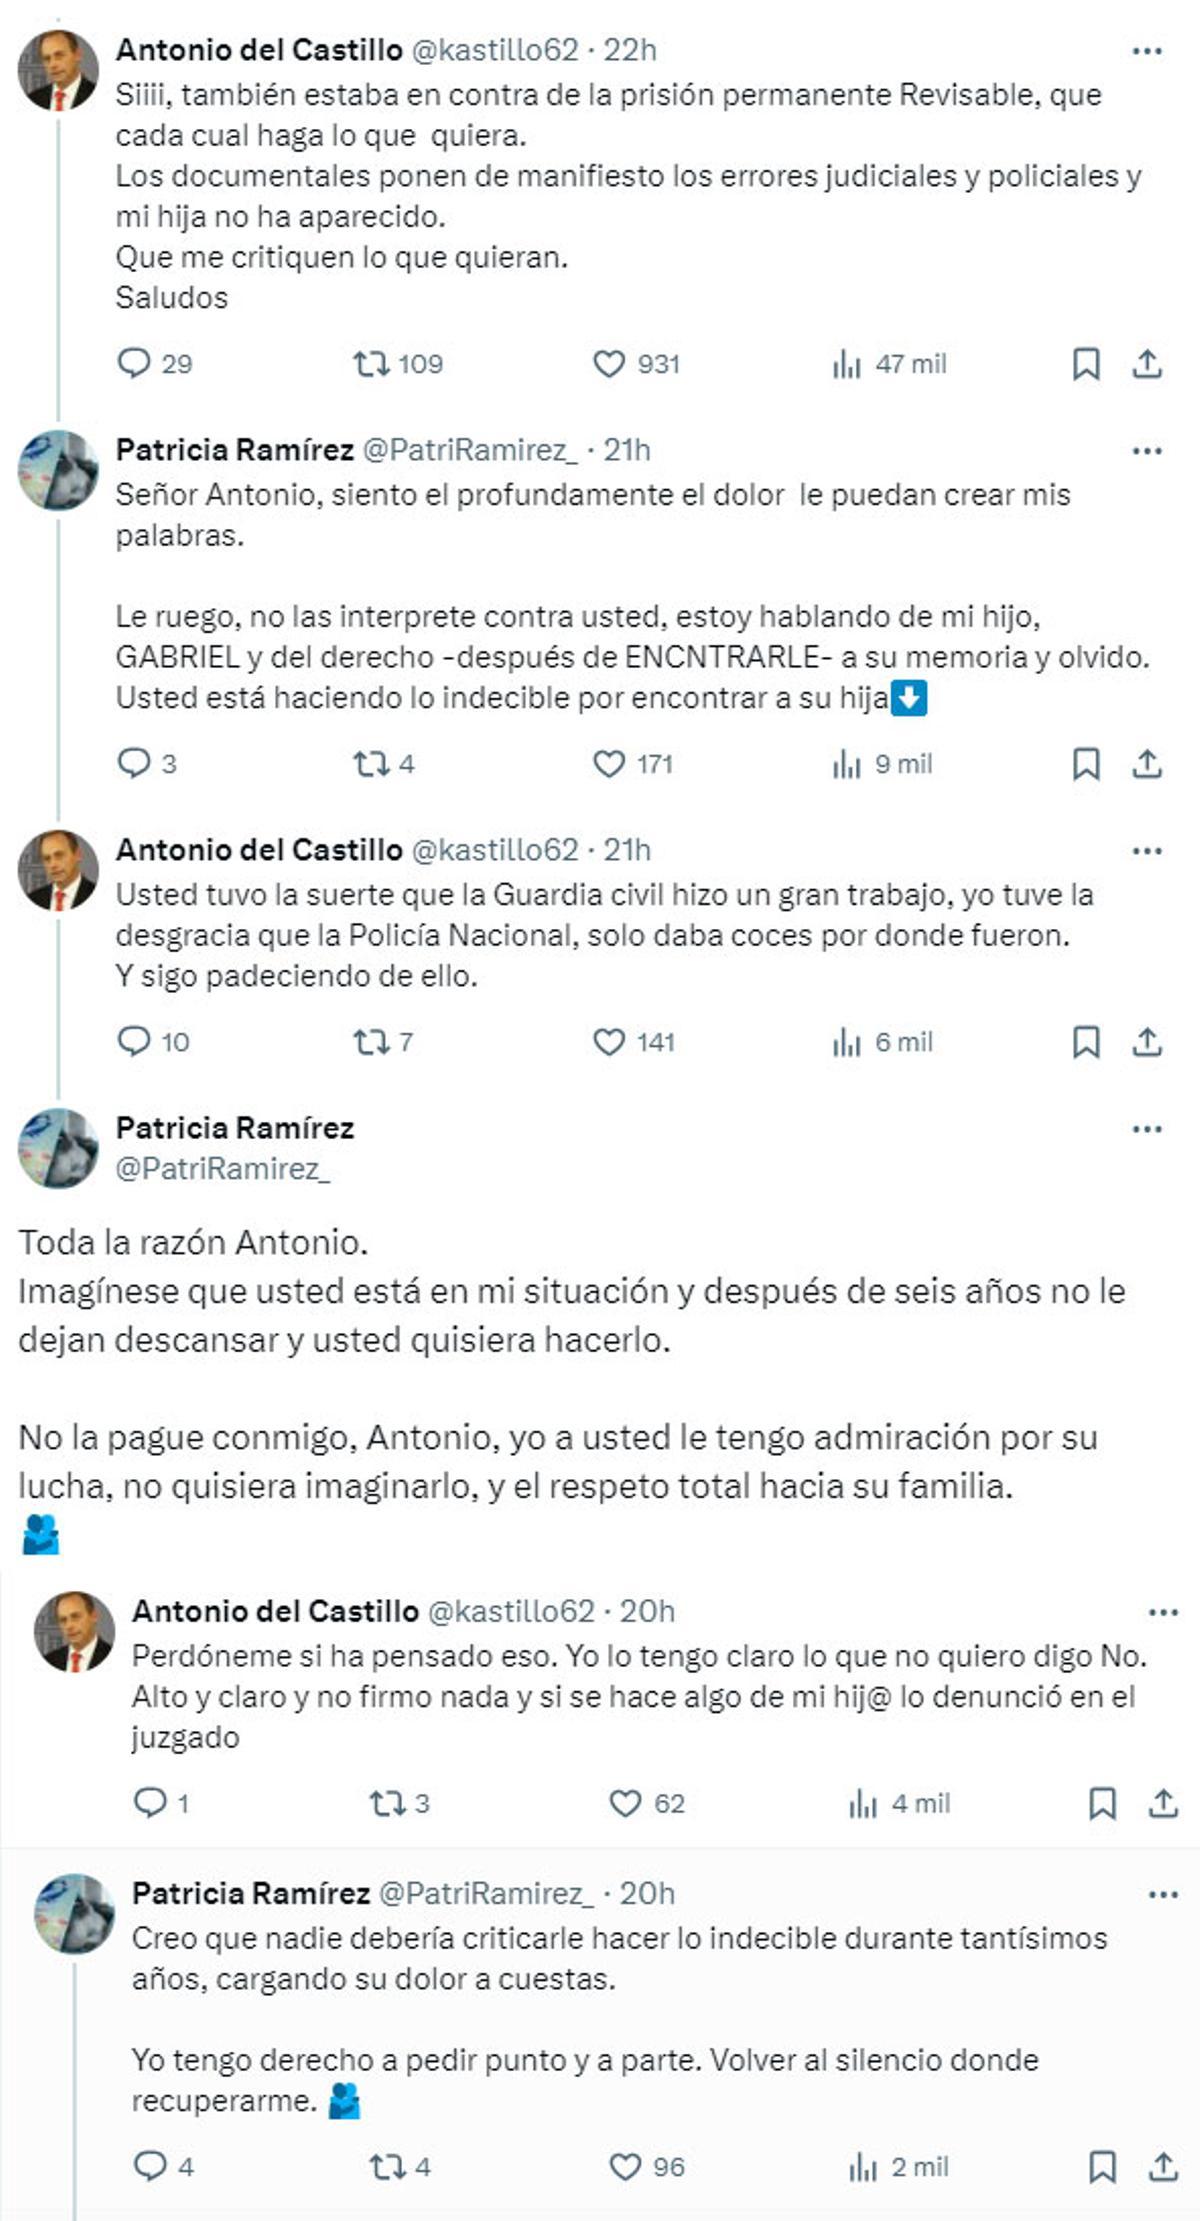 La conversación de Antonio del Castillo y Patricia Ramírez.